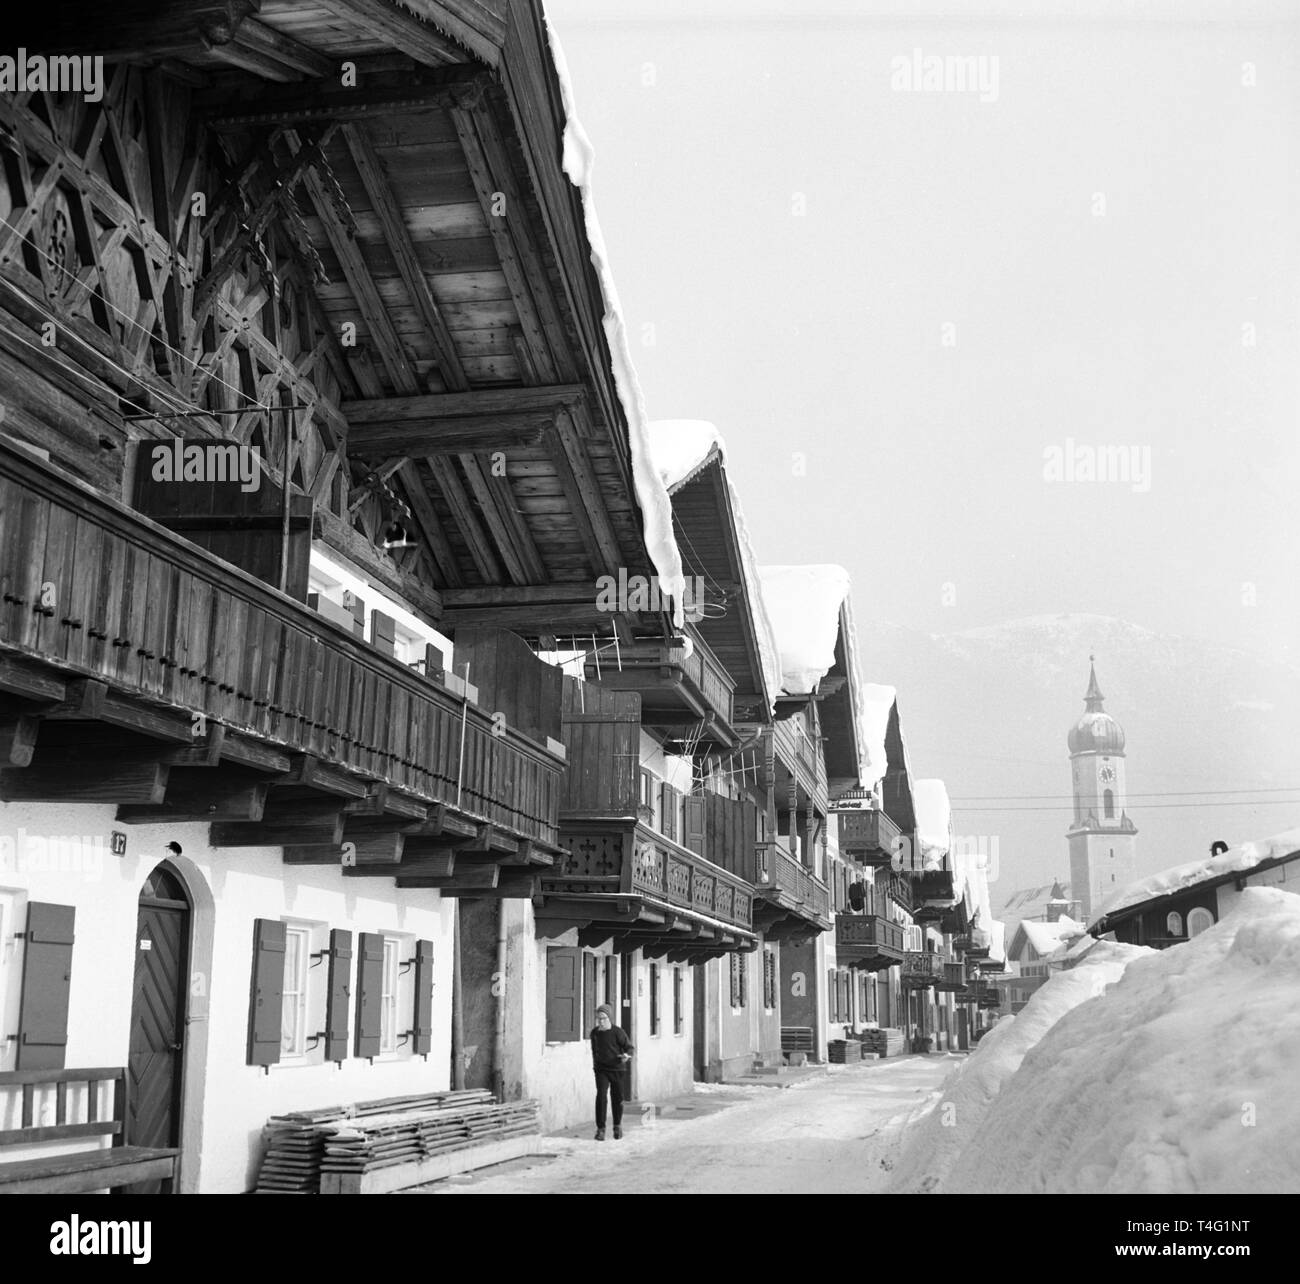 Blick auf die Häuser und die Kirche Turm im verschneiten Garmisch-Partenkirchen (undatiert Archiv Bild vom Januar 1963). | Verwendung weltweit Stockfoto